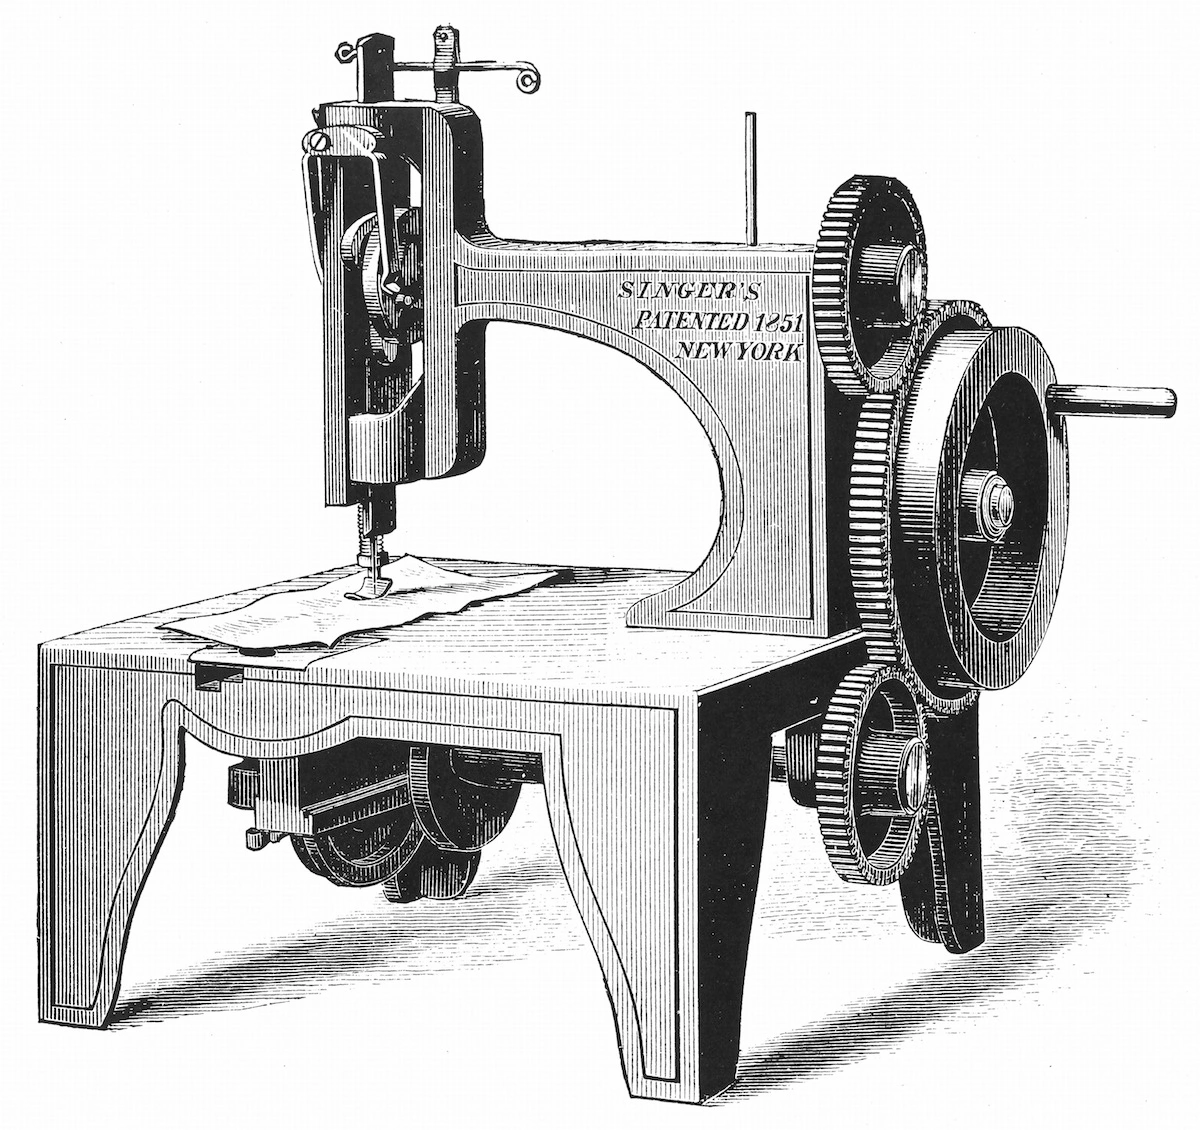 آلة خياطة إسحق ميريت سينجر الأولى، حاصلة على براءة اختراع عام 1851